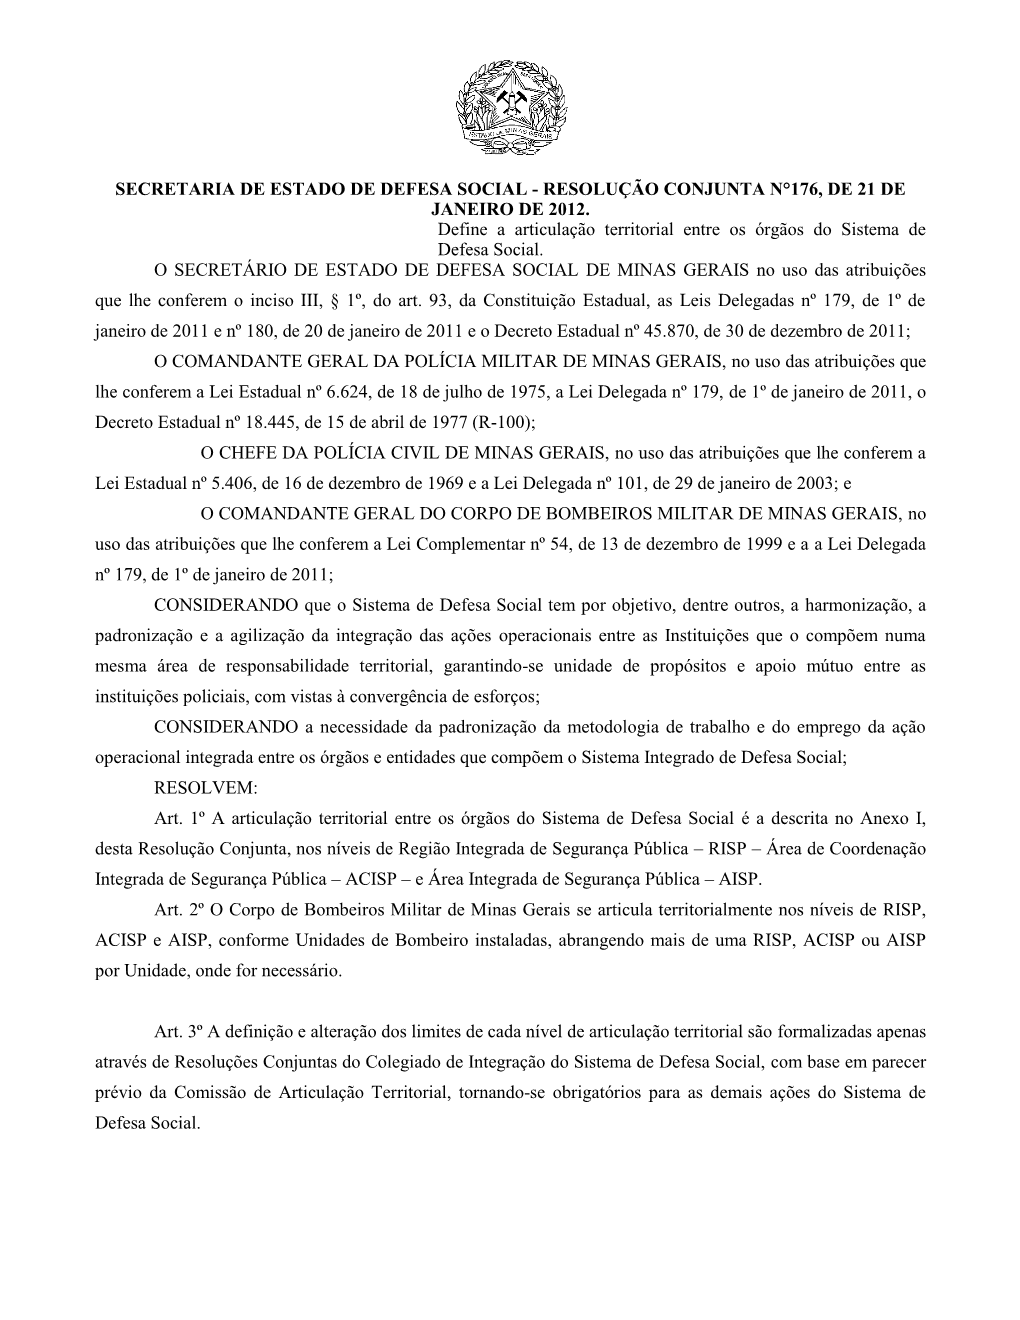 Secretaria De Estado De Defesa Social - Resolução Conjunta N°176, De 21 De Janeiro De 2012